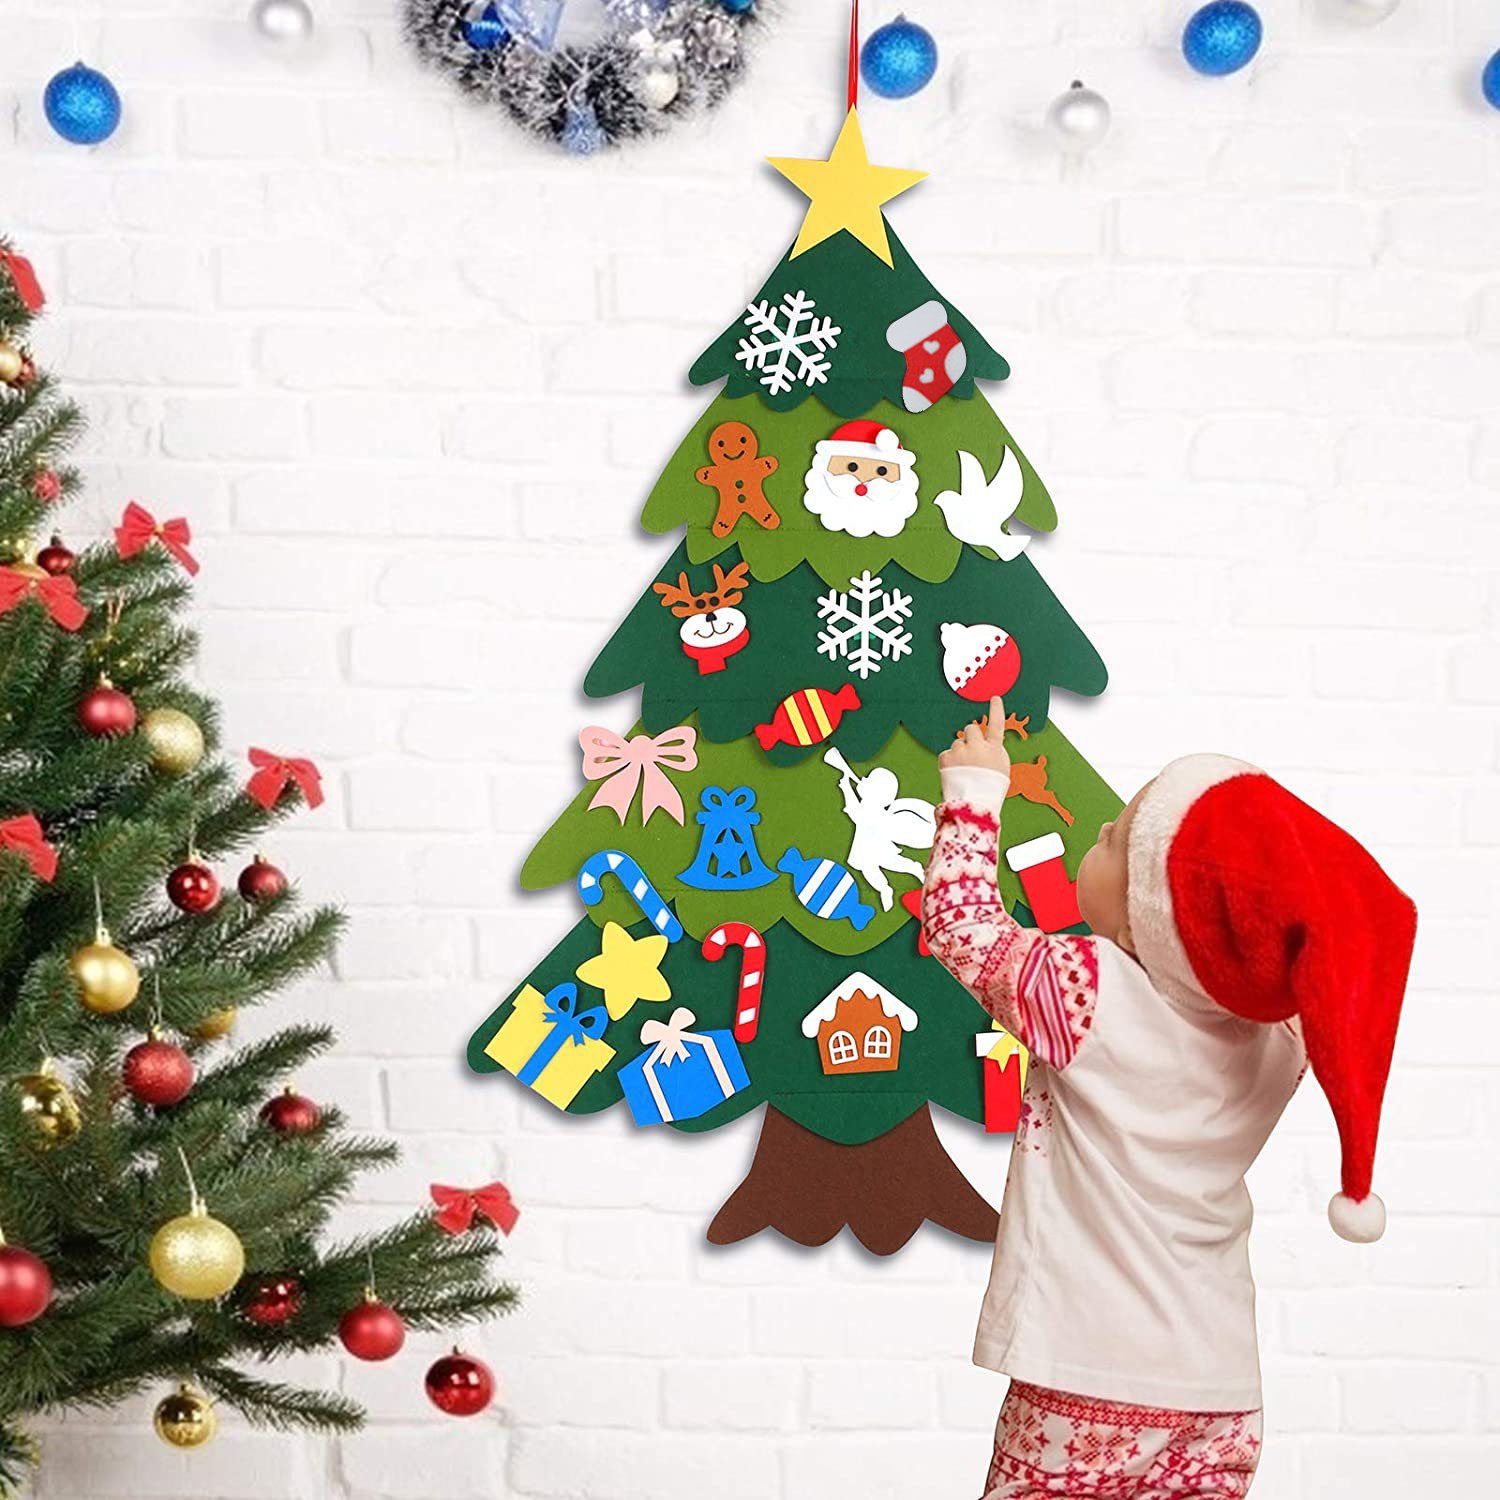 Dekoration Kinder Pcs DIY Weihnachtsbaum Hängend 26 Vaxiuja Künstlicher Filz Weihnachten Weihnachtsbaum,